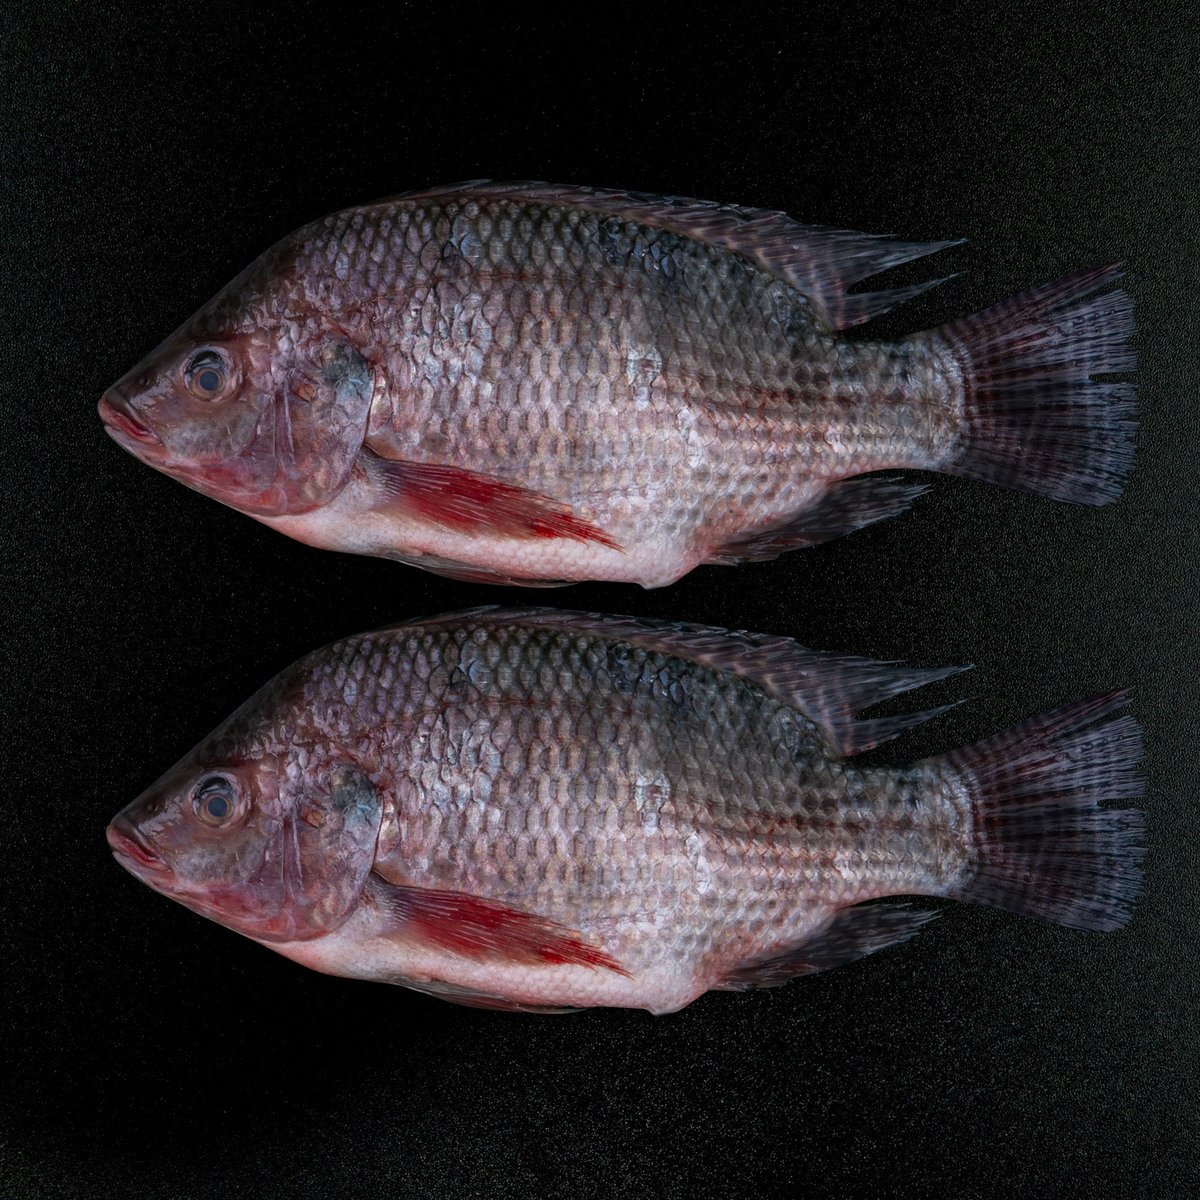 Tilapia Fish 1 kg